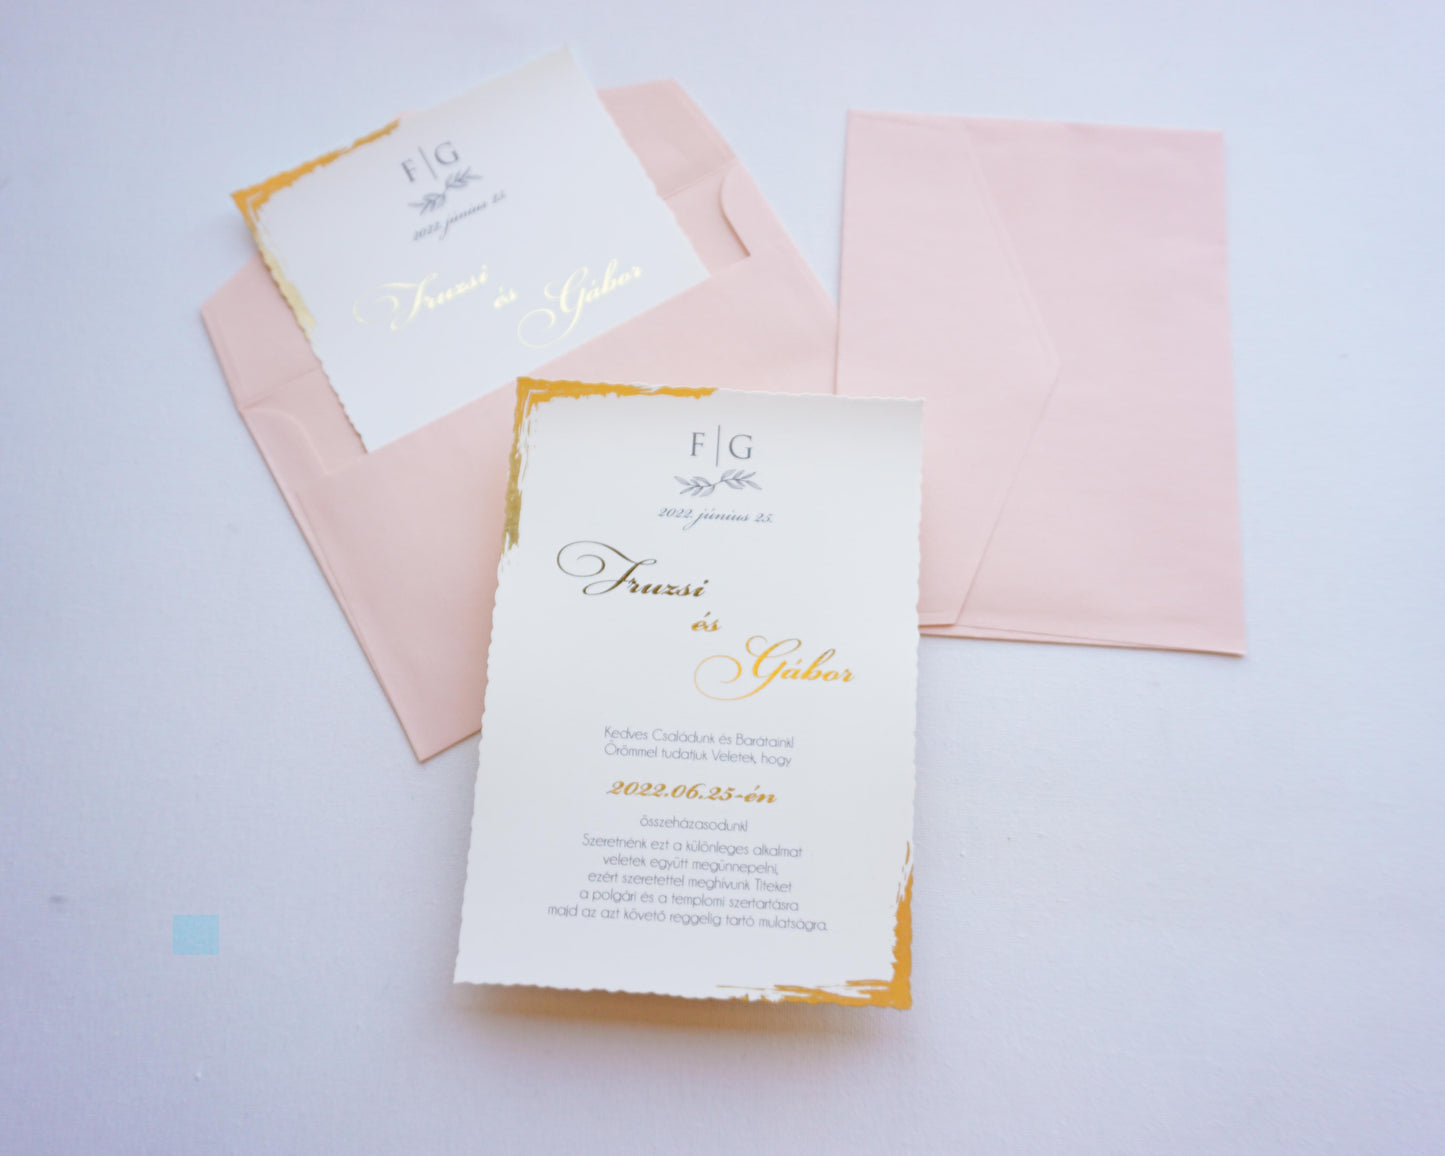 EM37 - Aranyfóliázott minimalista esküvői meghívó